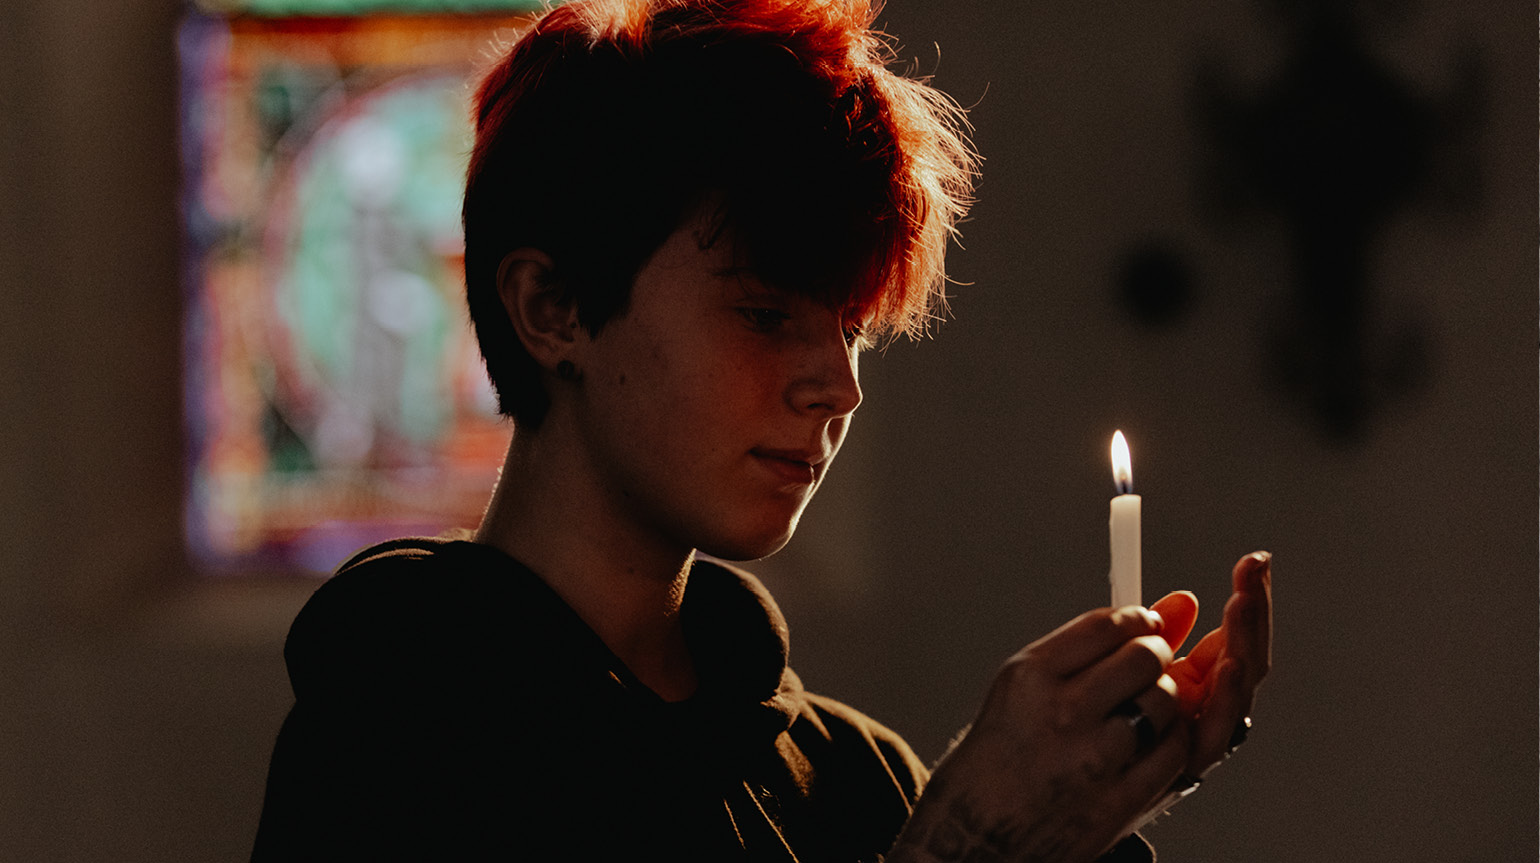 Mange pårørende opplever det som fint å delta med noe praktisk i seremonien. Et eksempel kan være å tenne lys. Foto: Malin Longva/Den norske kirke